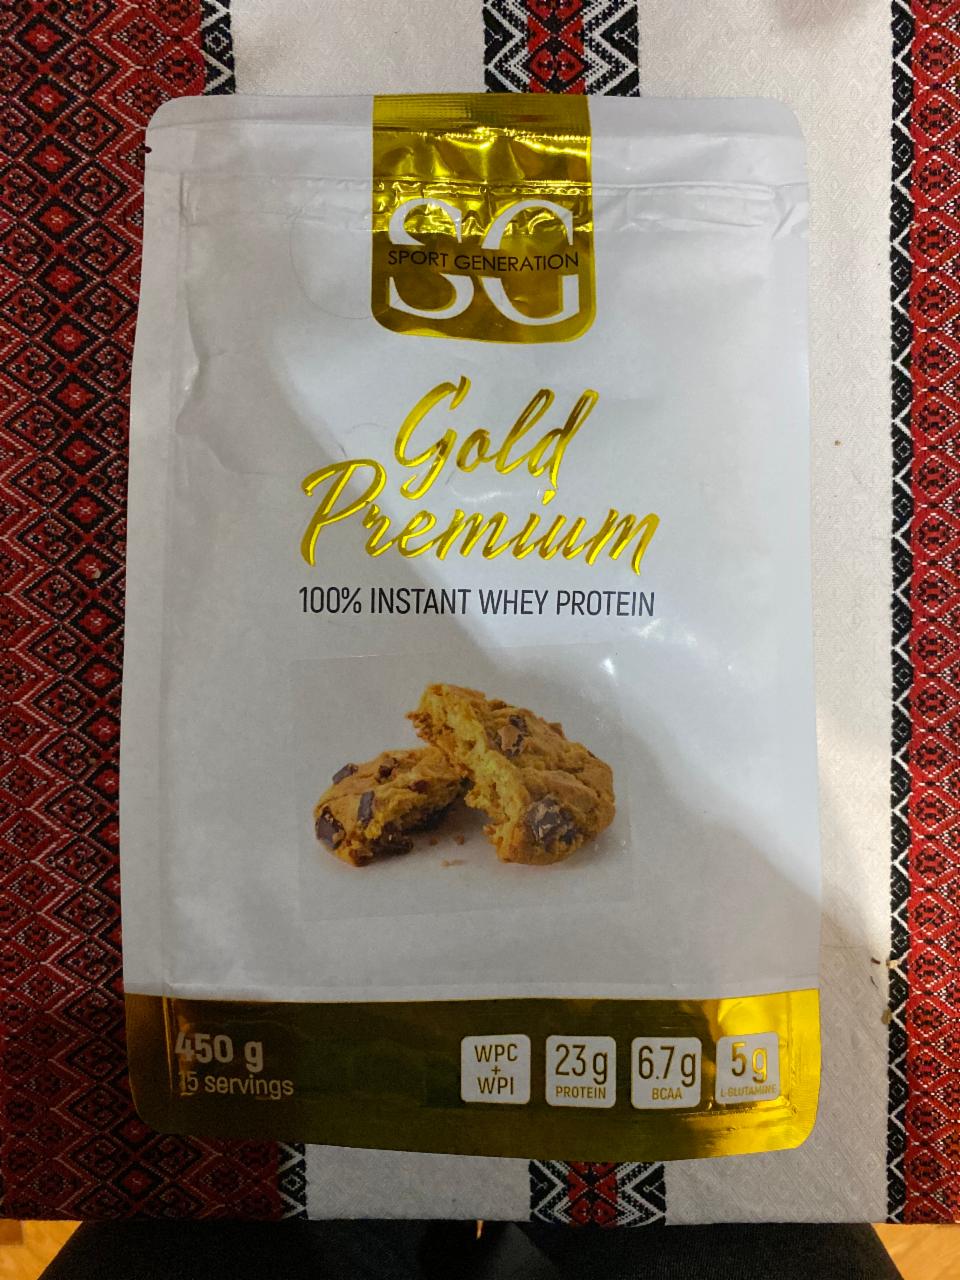 Фото - Протеїн 100% зі смаком шоколадного печива Whey Protein Gold Premium Sport Generation